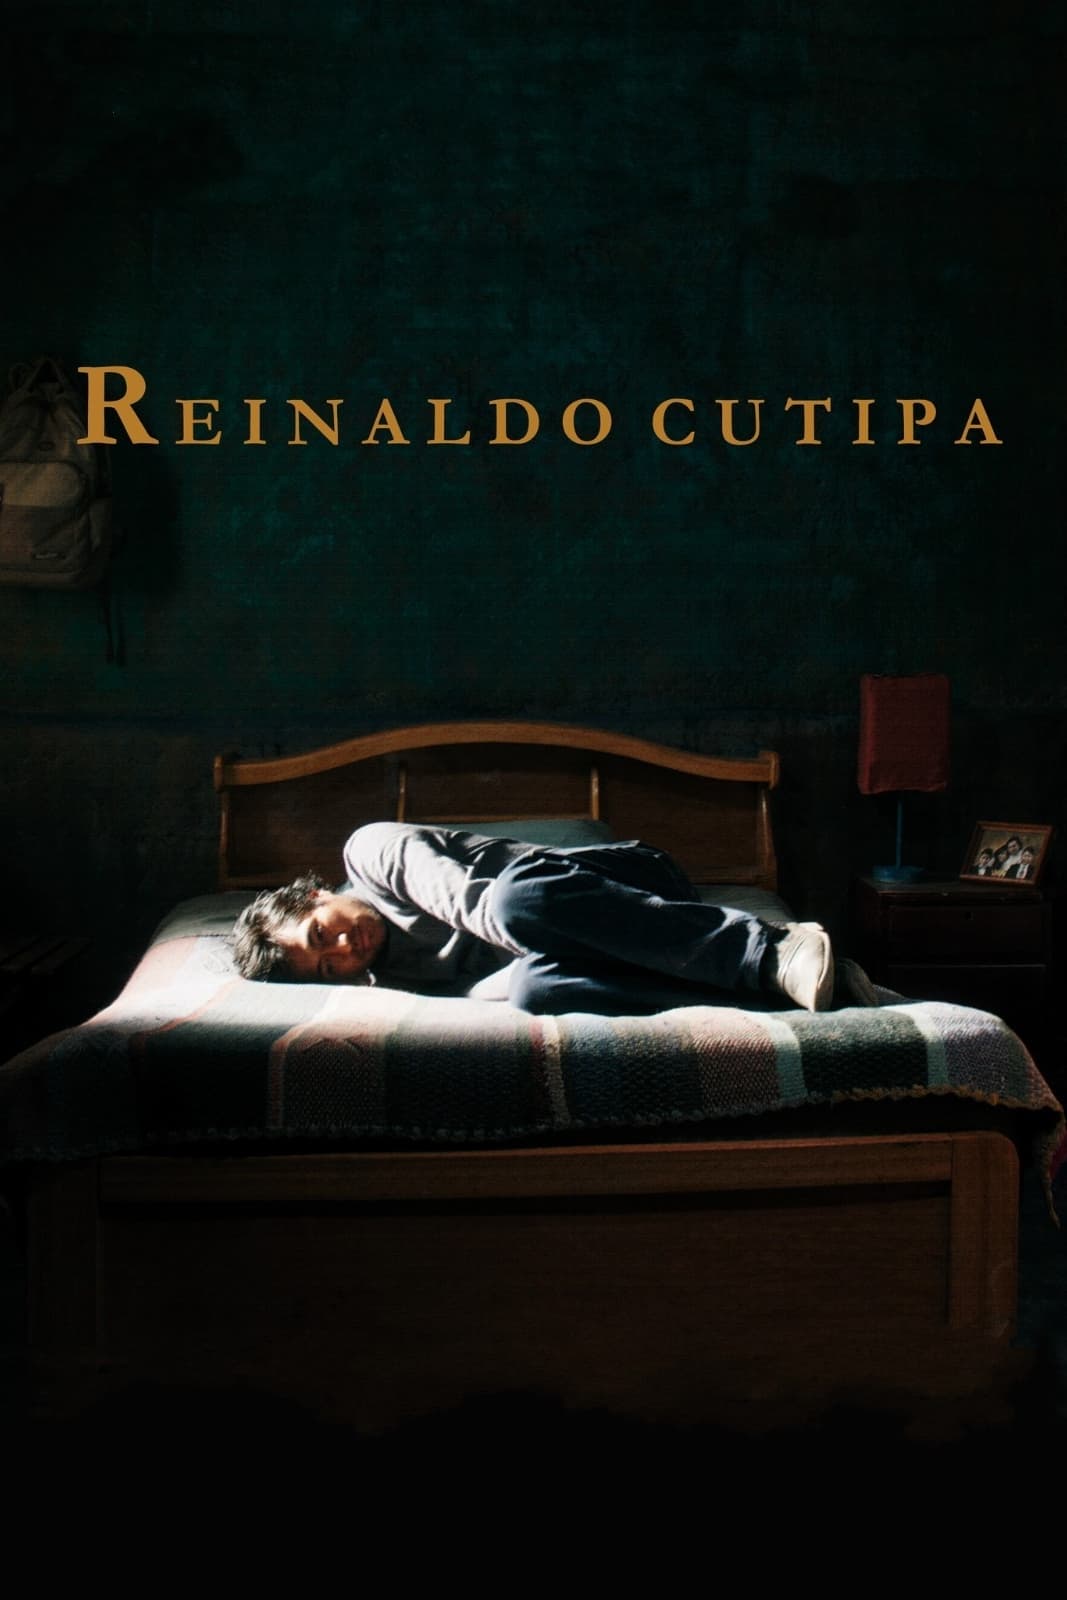 Reinaldo Cutipa